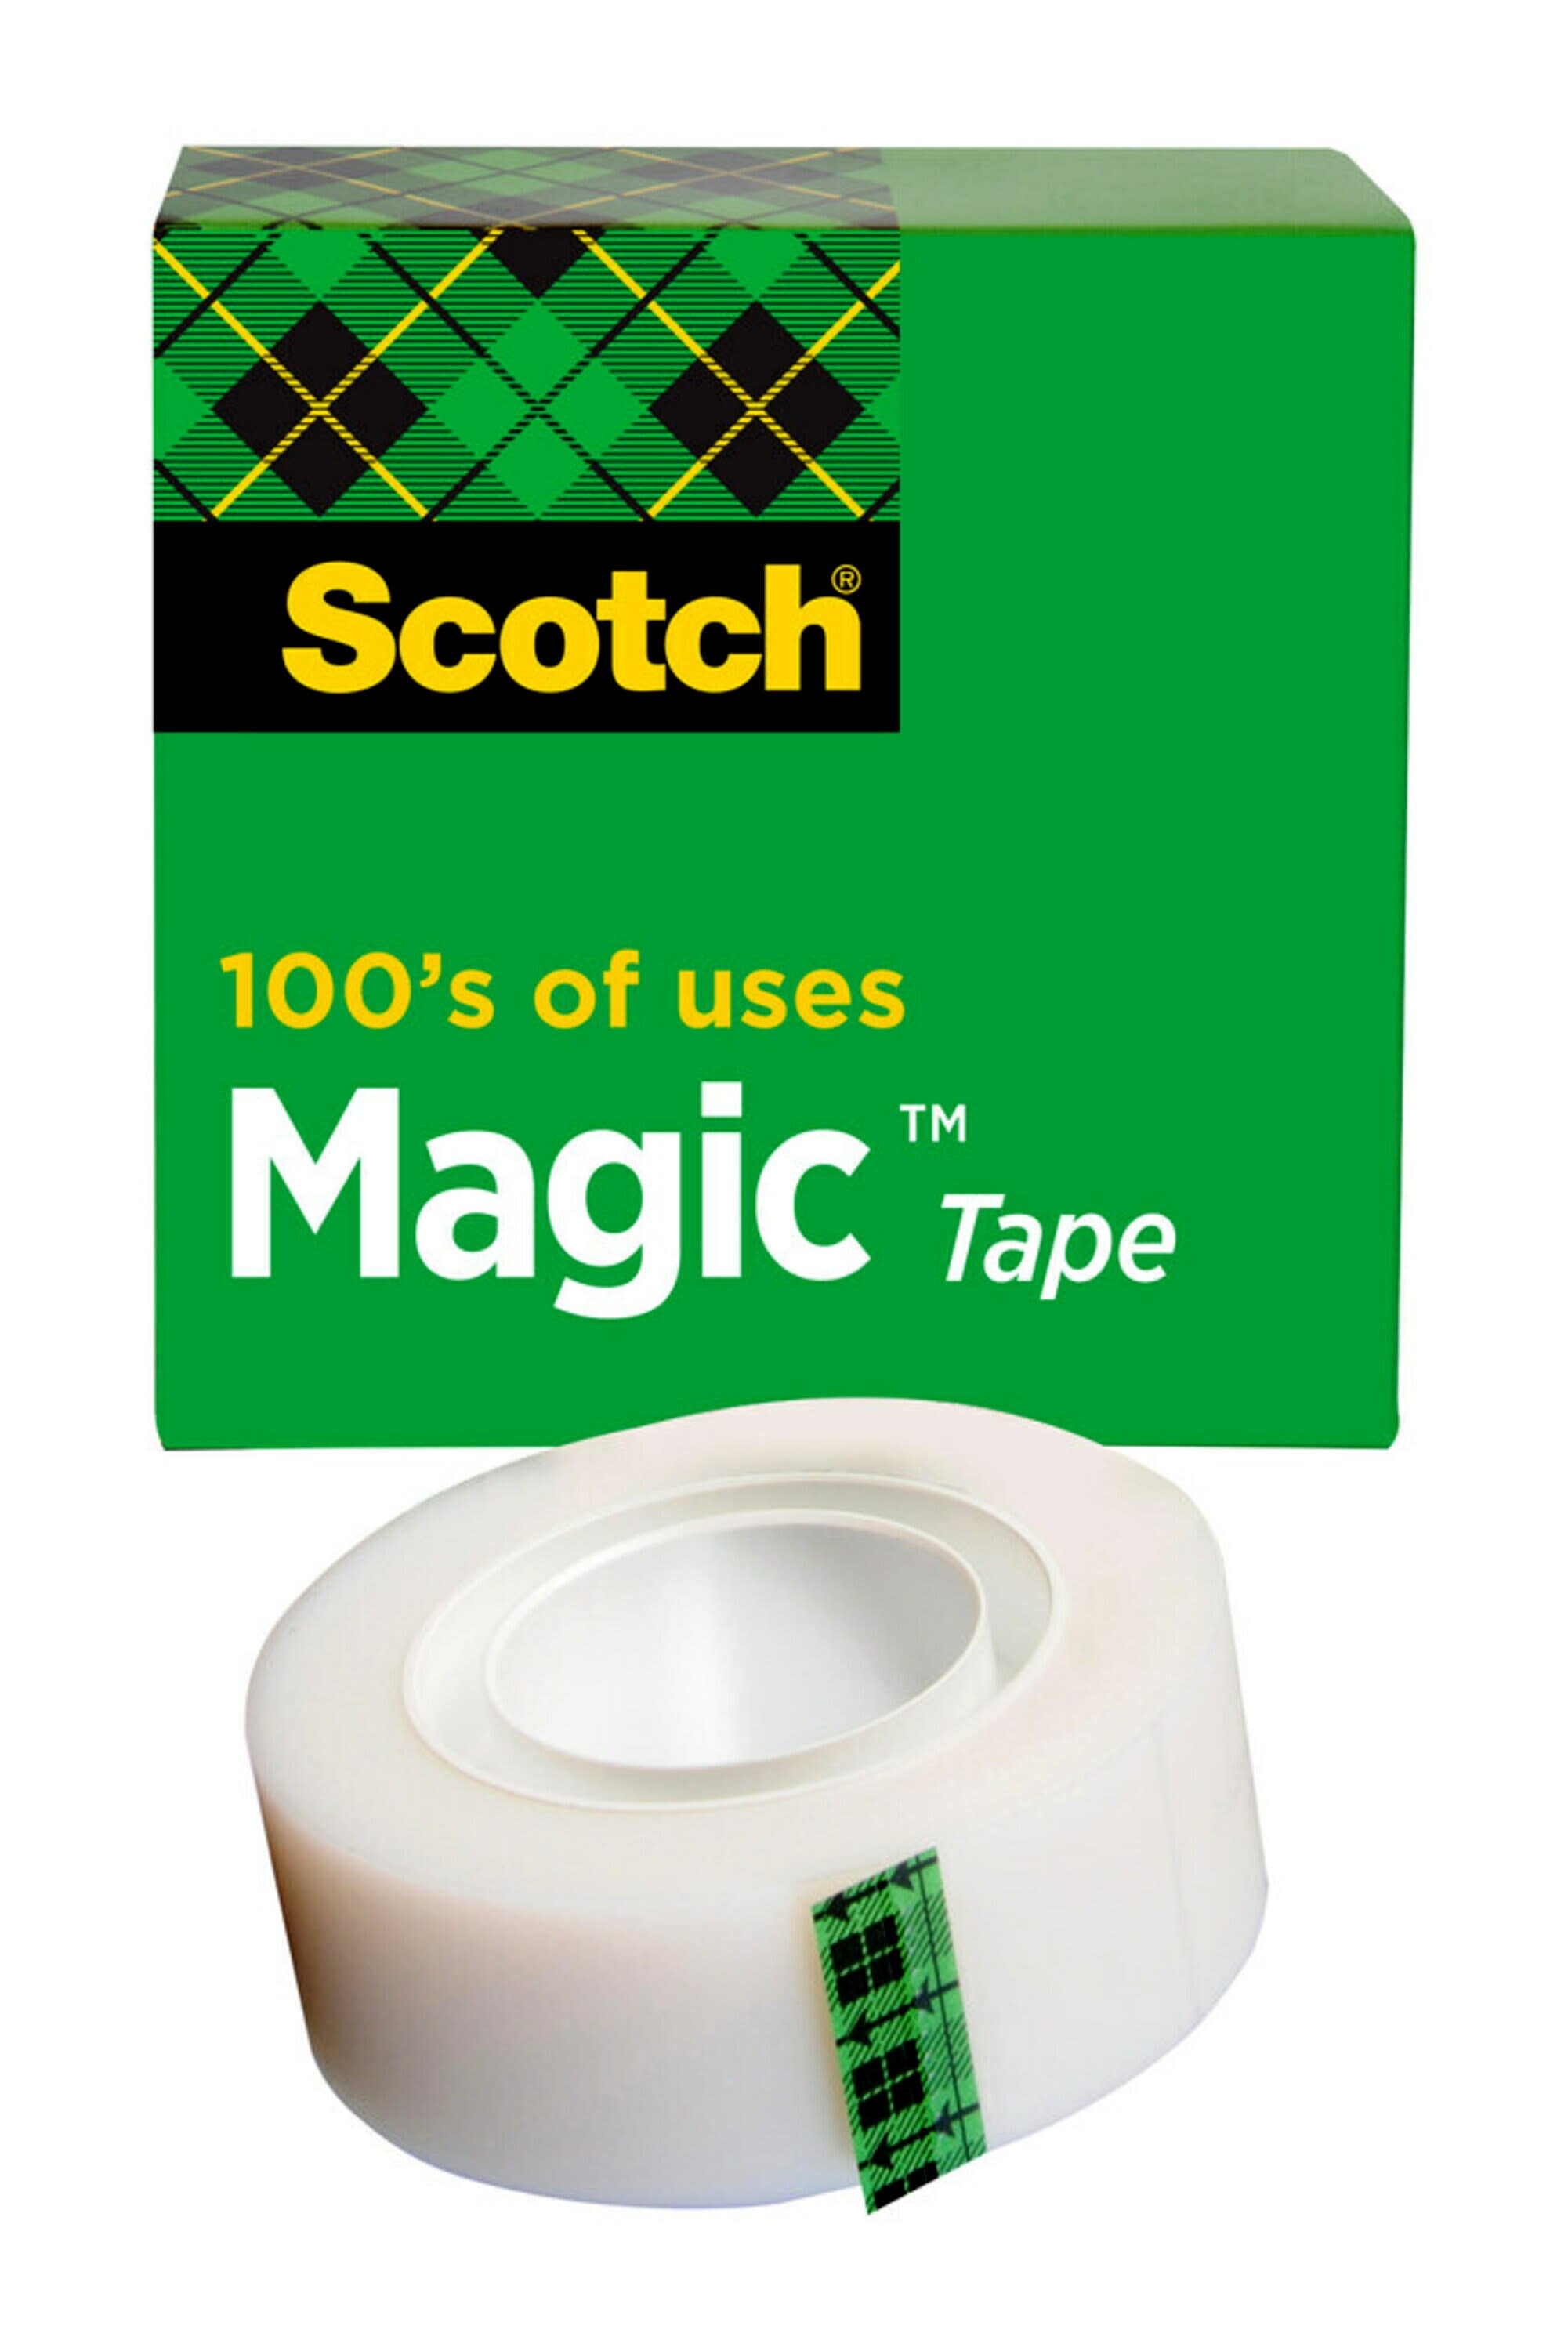 13.8 YD 3M Scotch Magic Tape w/ Refillable Dispenser 3/4In X 500In 6 Total Lot 51141314921 